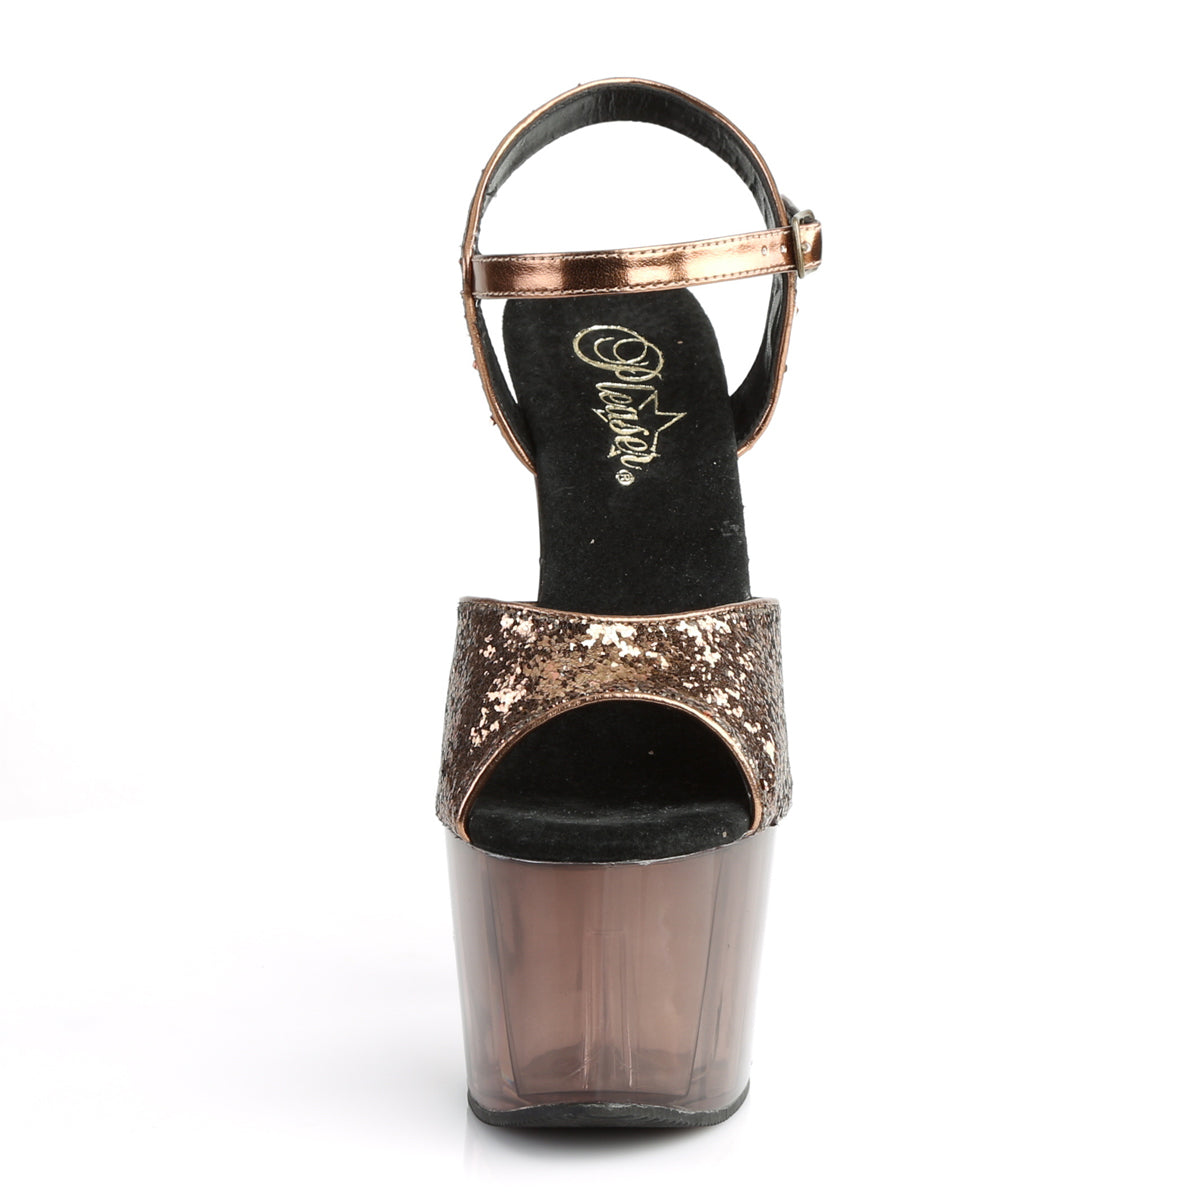 Pleaser Sandali da donna ADORE-710gt bronzo glitter / bronzo colorato